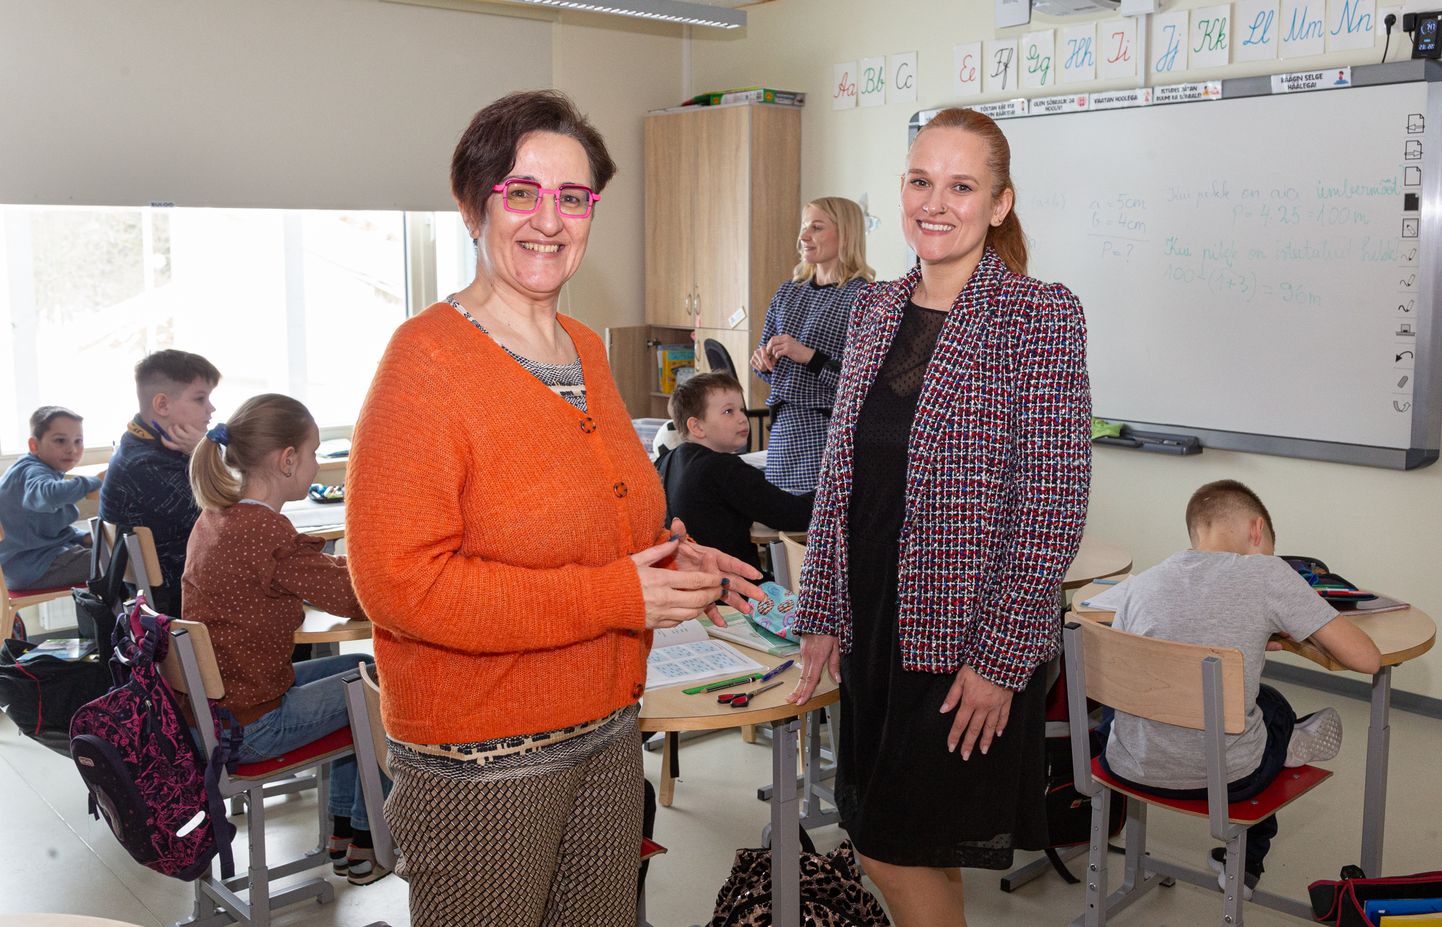 Kogenud õpetaja Kristiina Raidvere tutvus teiste seas Sinimäe põhikooliga. Direktor Aljona Kordontšuk kinnitas, et koolimaja uksed on huvilistele avatud.